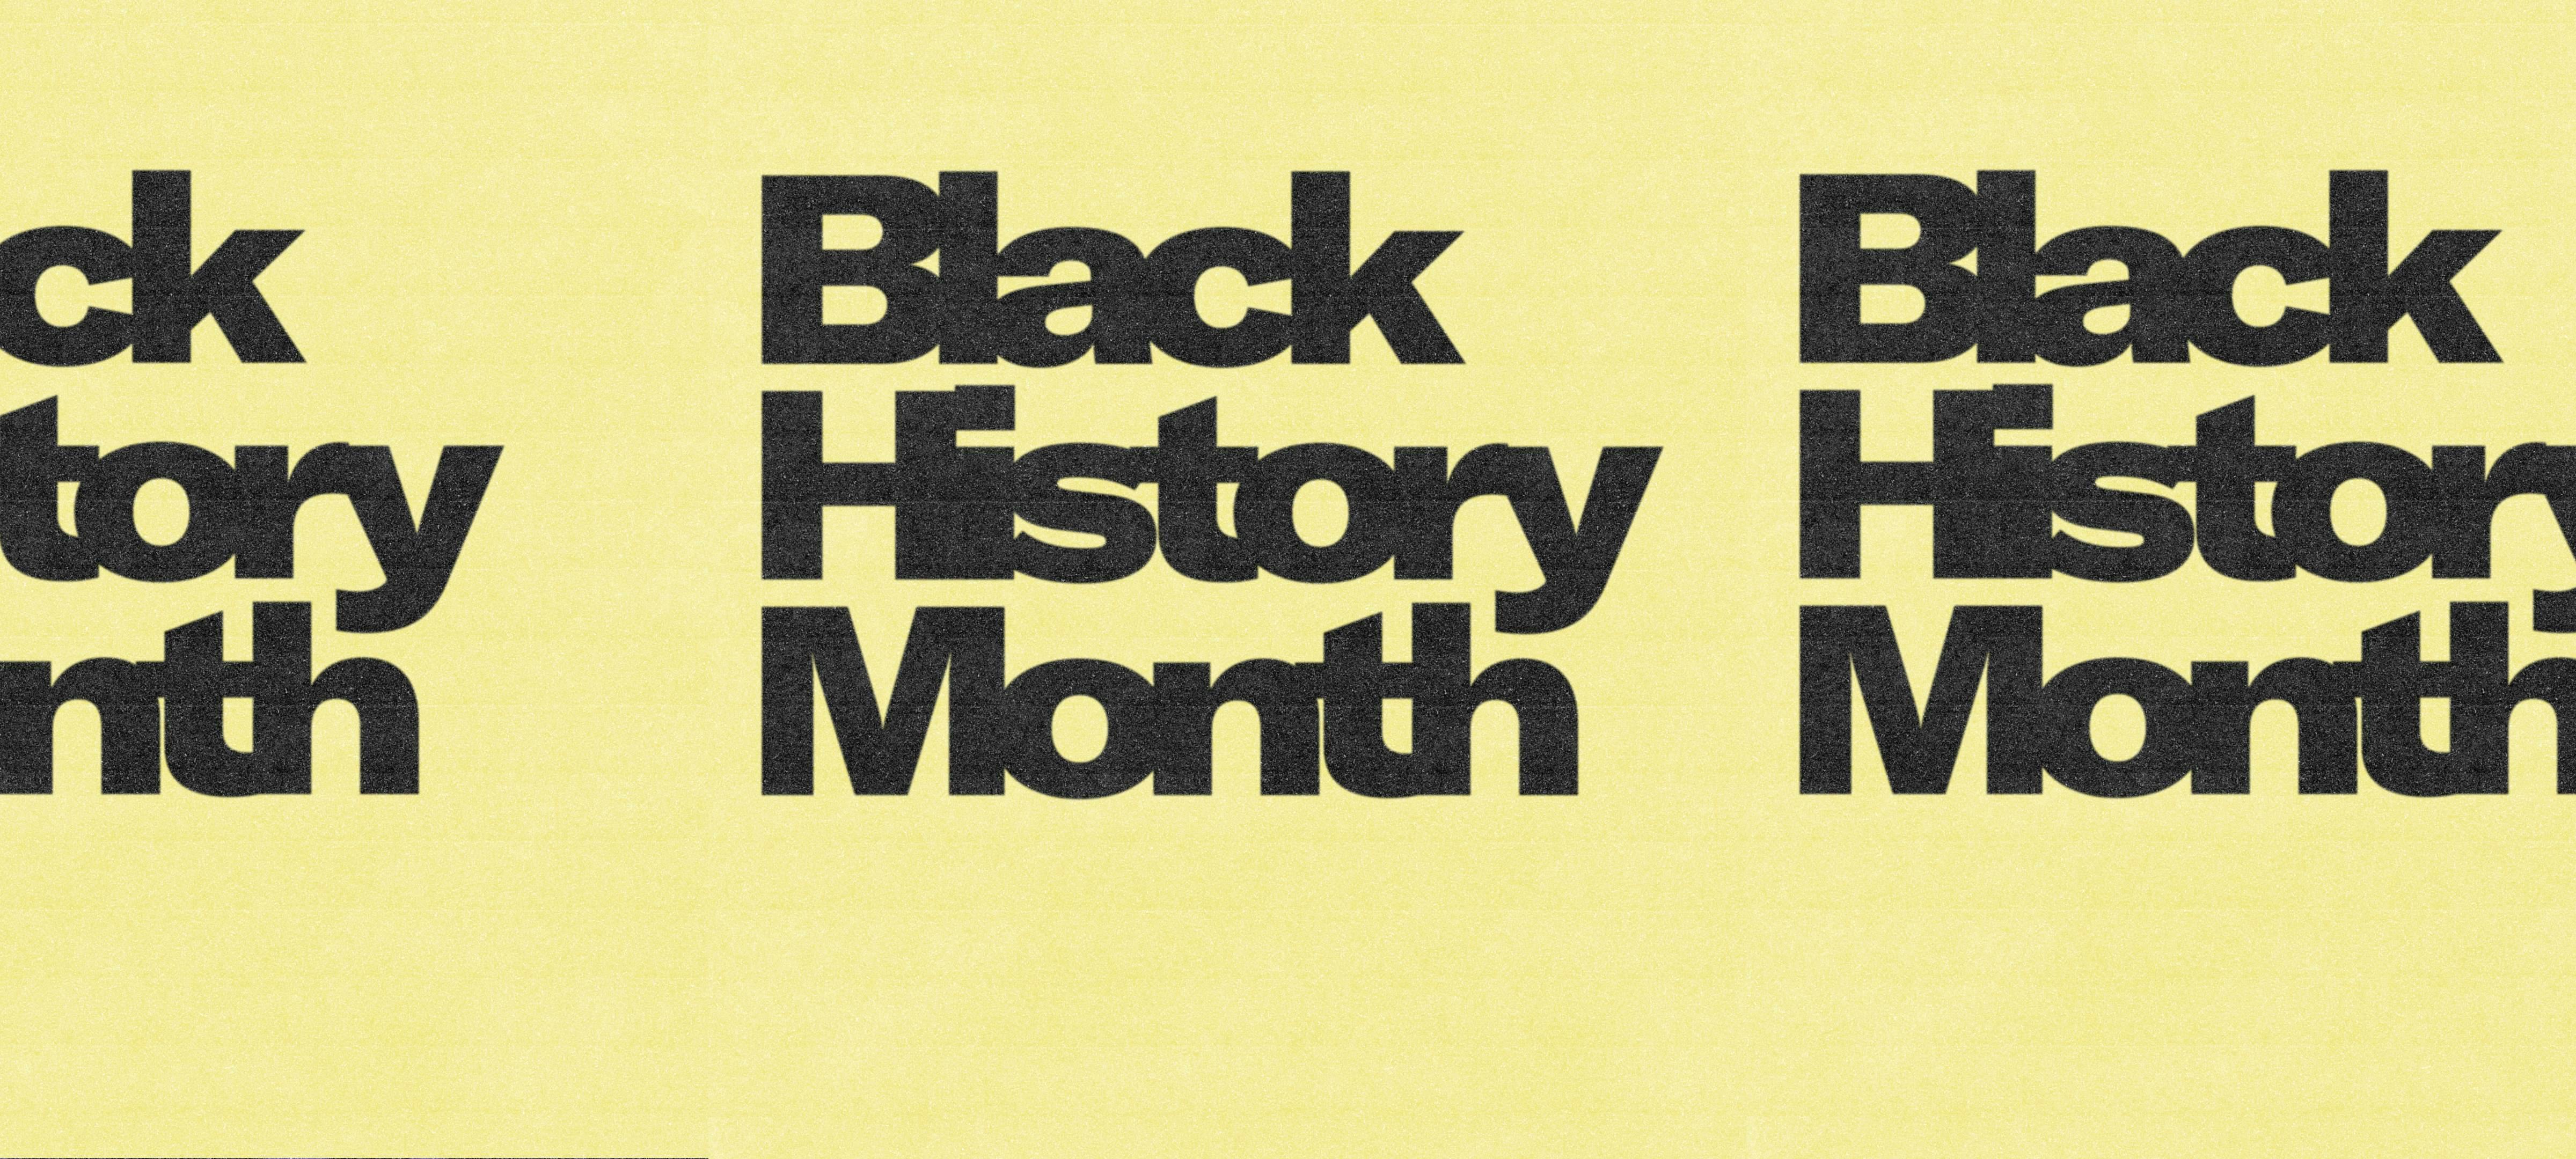 Black History Month: Week 1